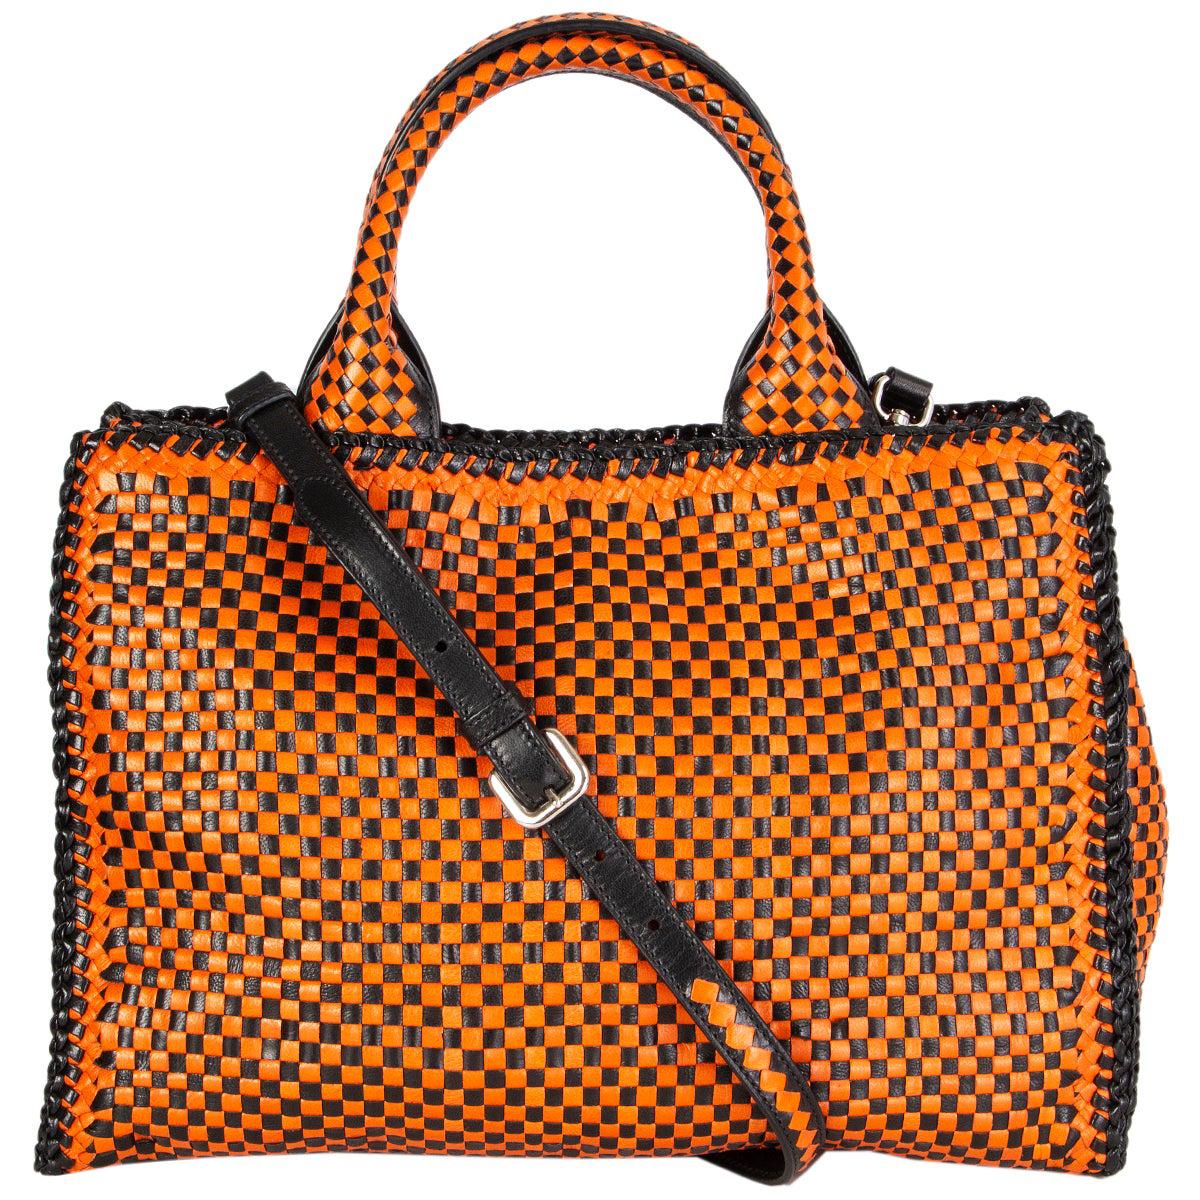 Prada Madras Leather Handbag